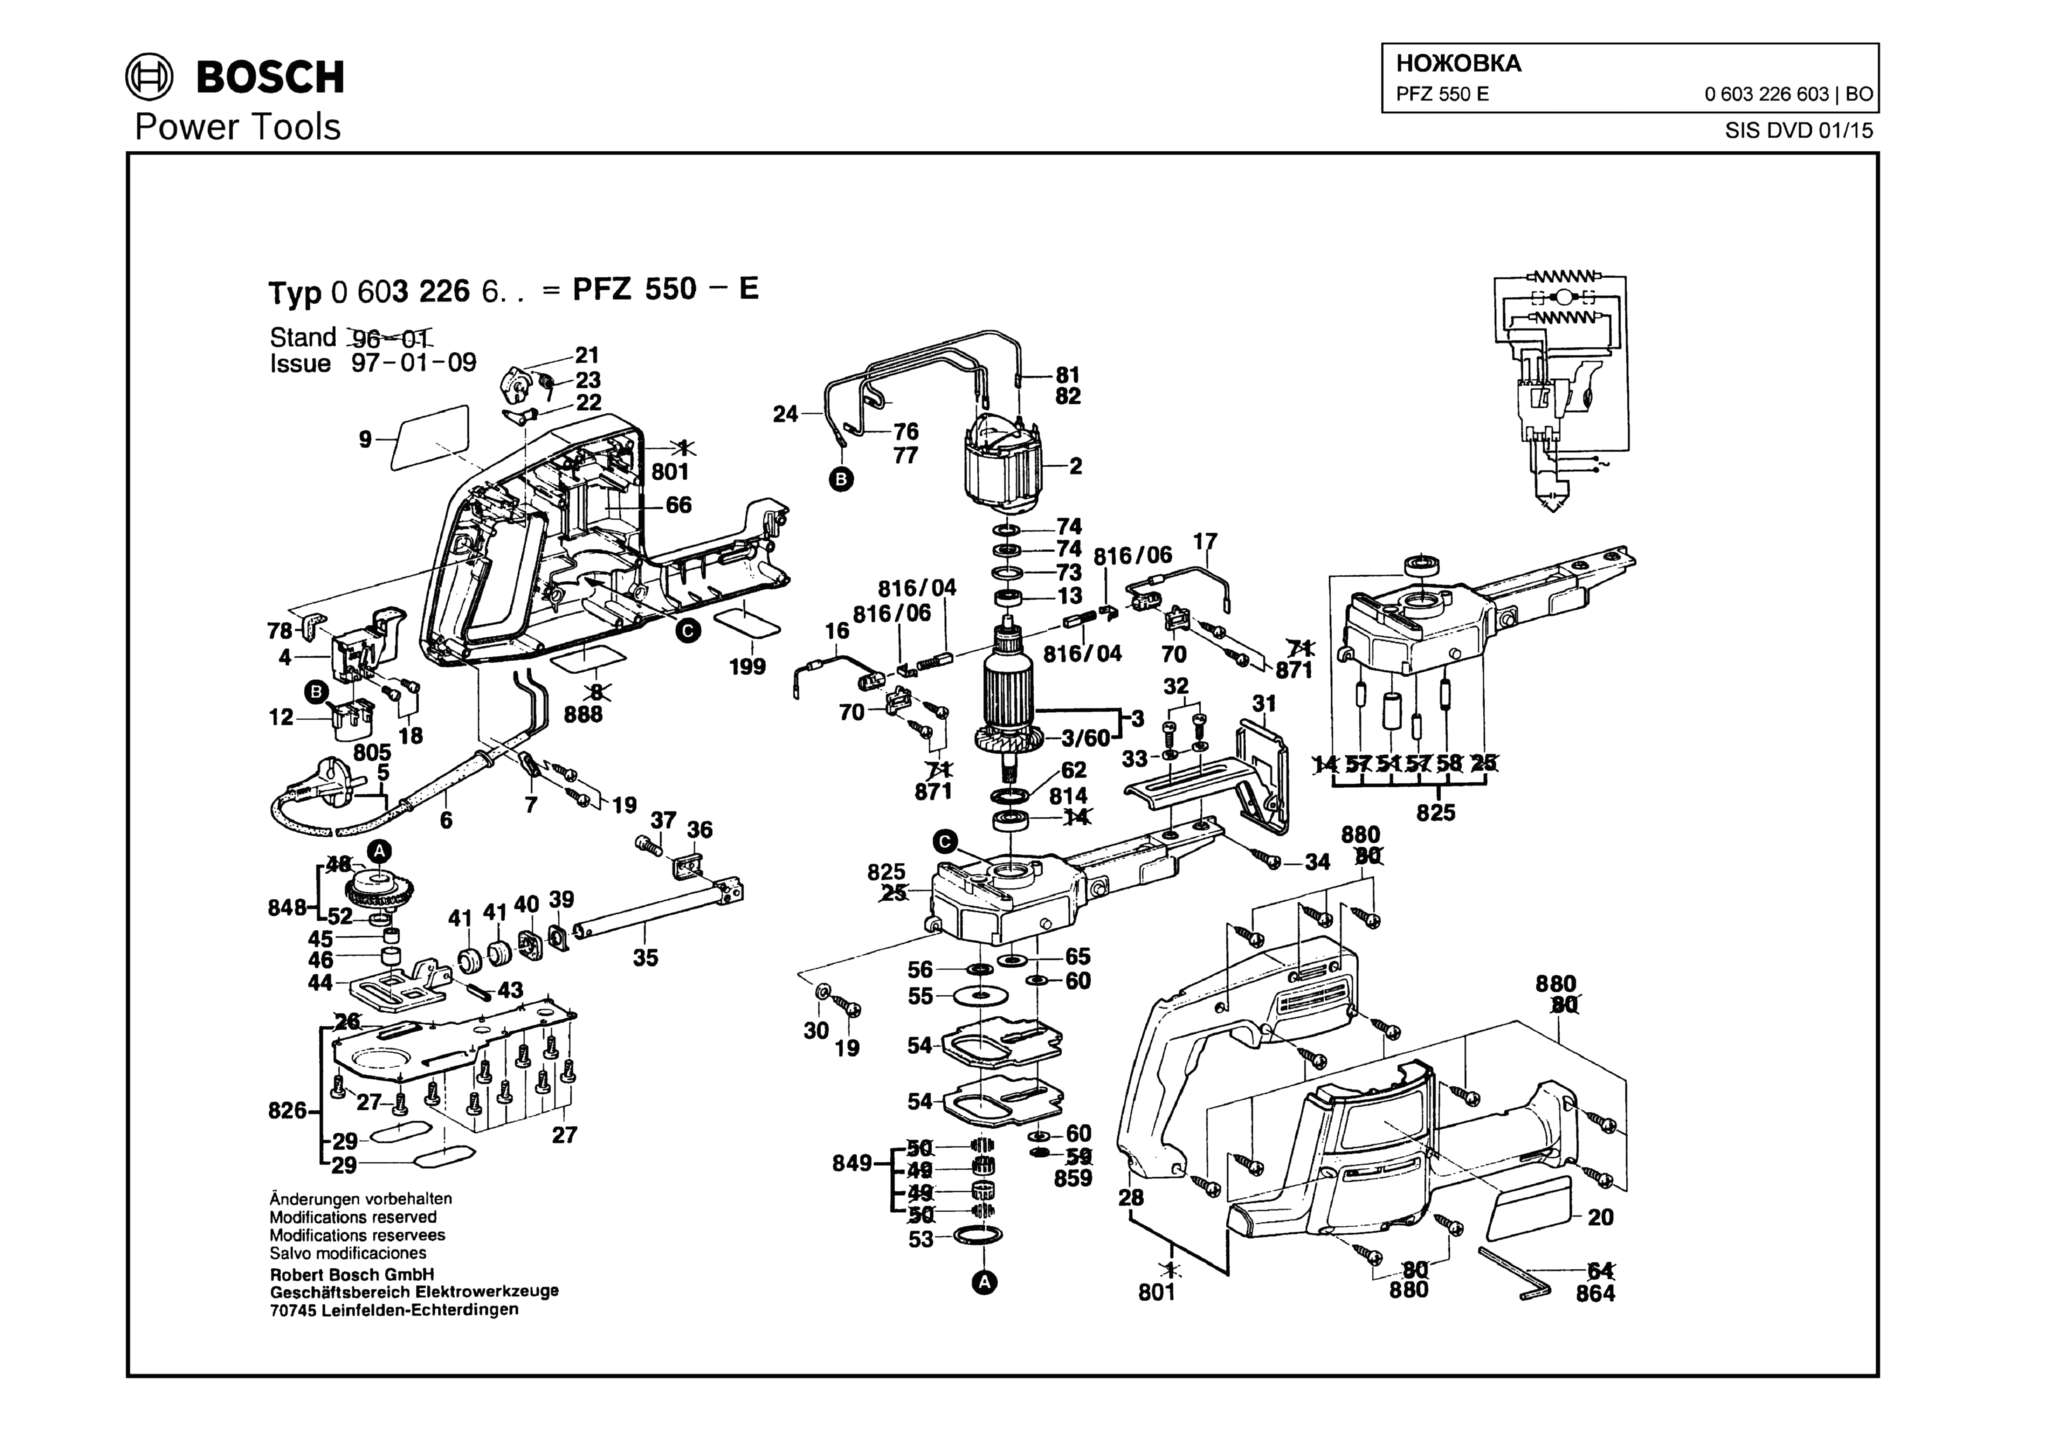 Запчасти, схема и деталировка Bosch PFZ 550 E (ТИП 0603226603)